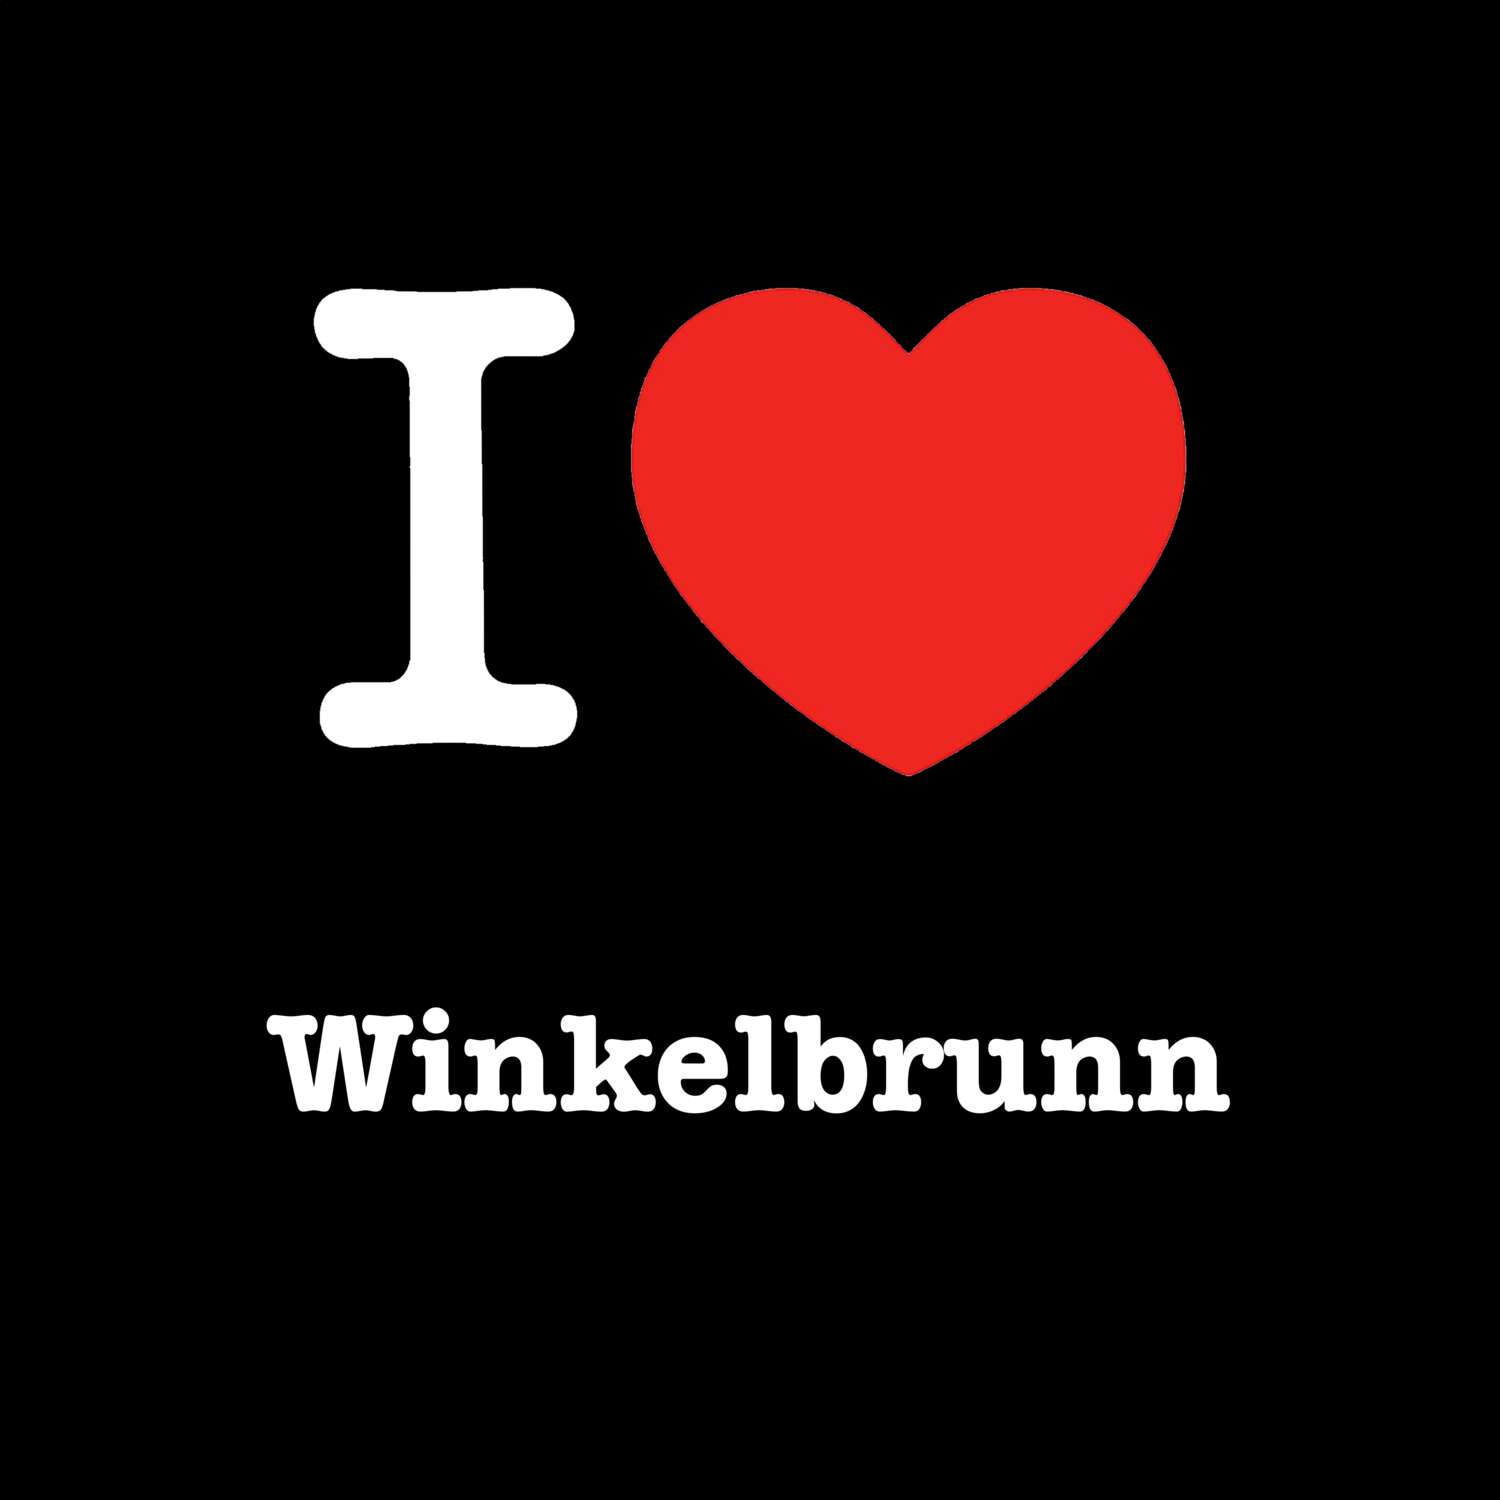 Winkelbrunn T-Shirt »I love«